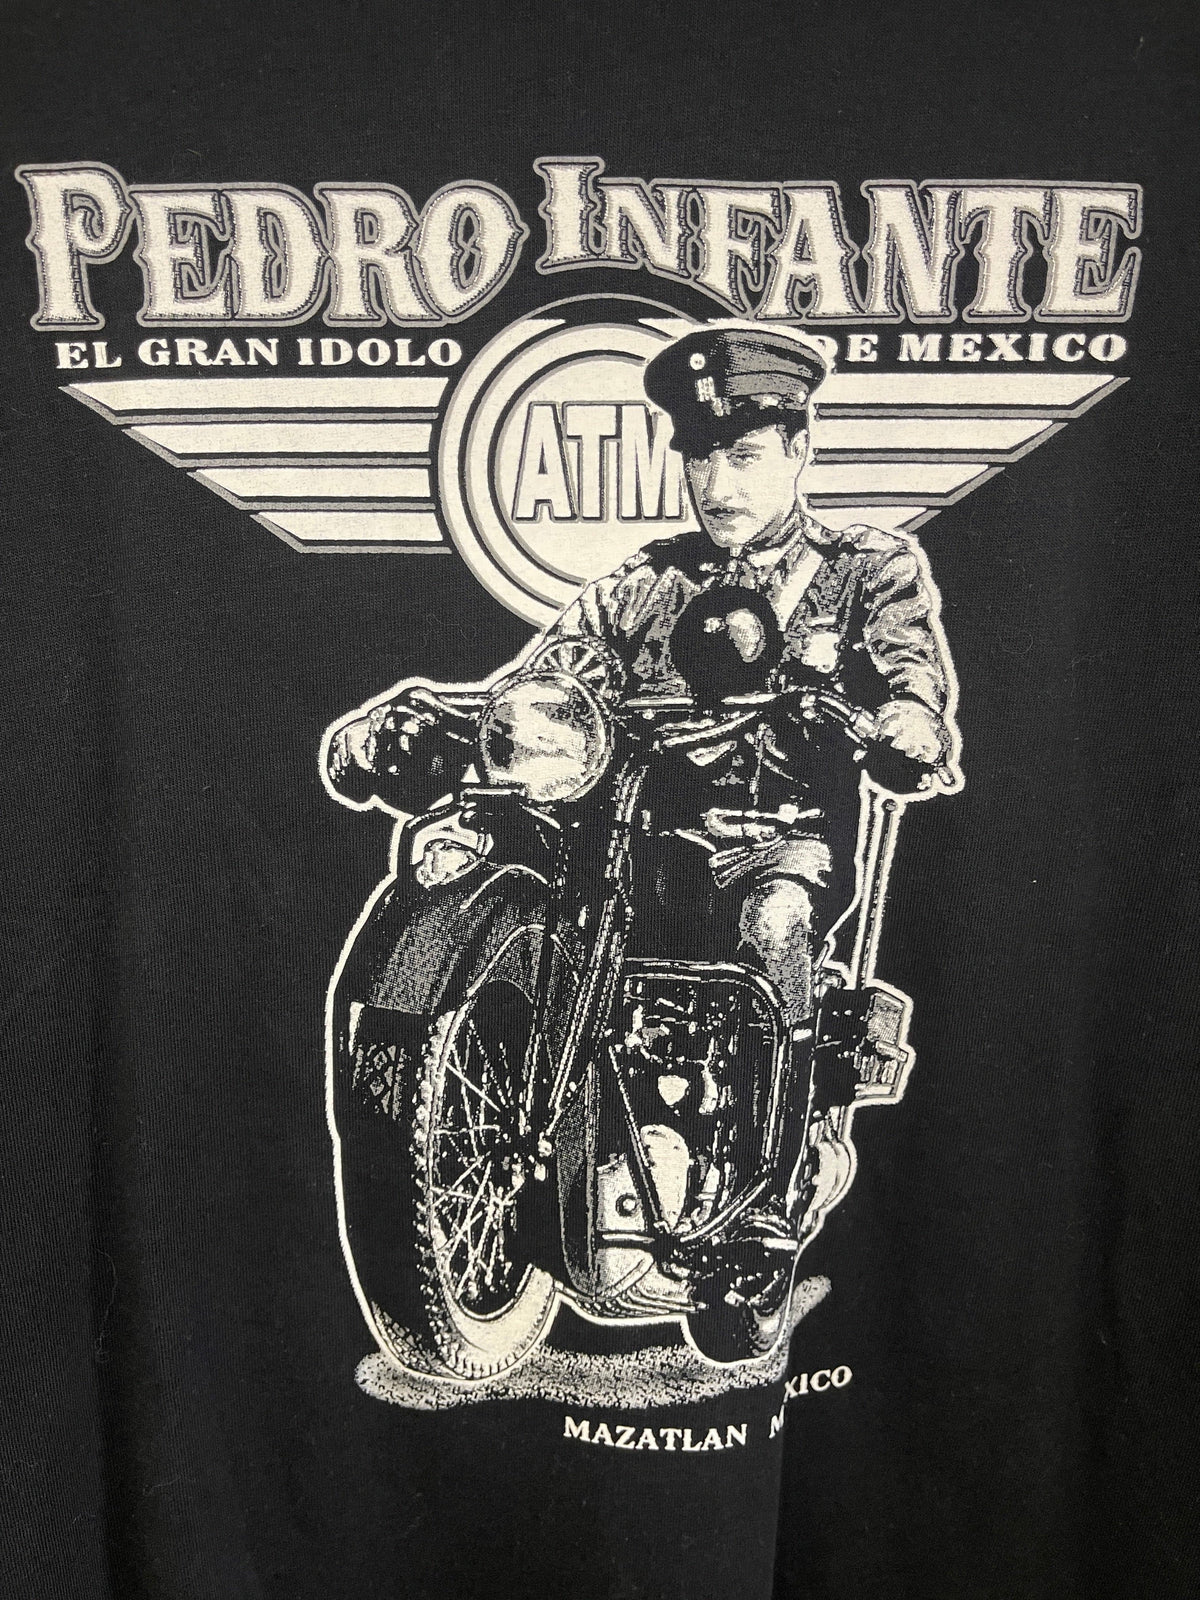 Pedro Infante ATM Motorbike Cotton T-Shirt Men's 2X-Large